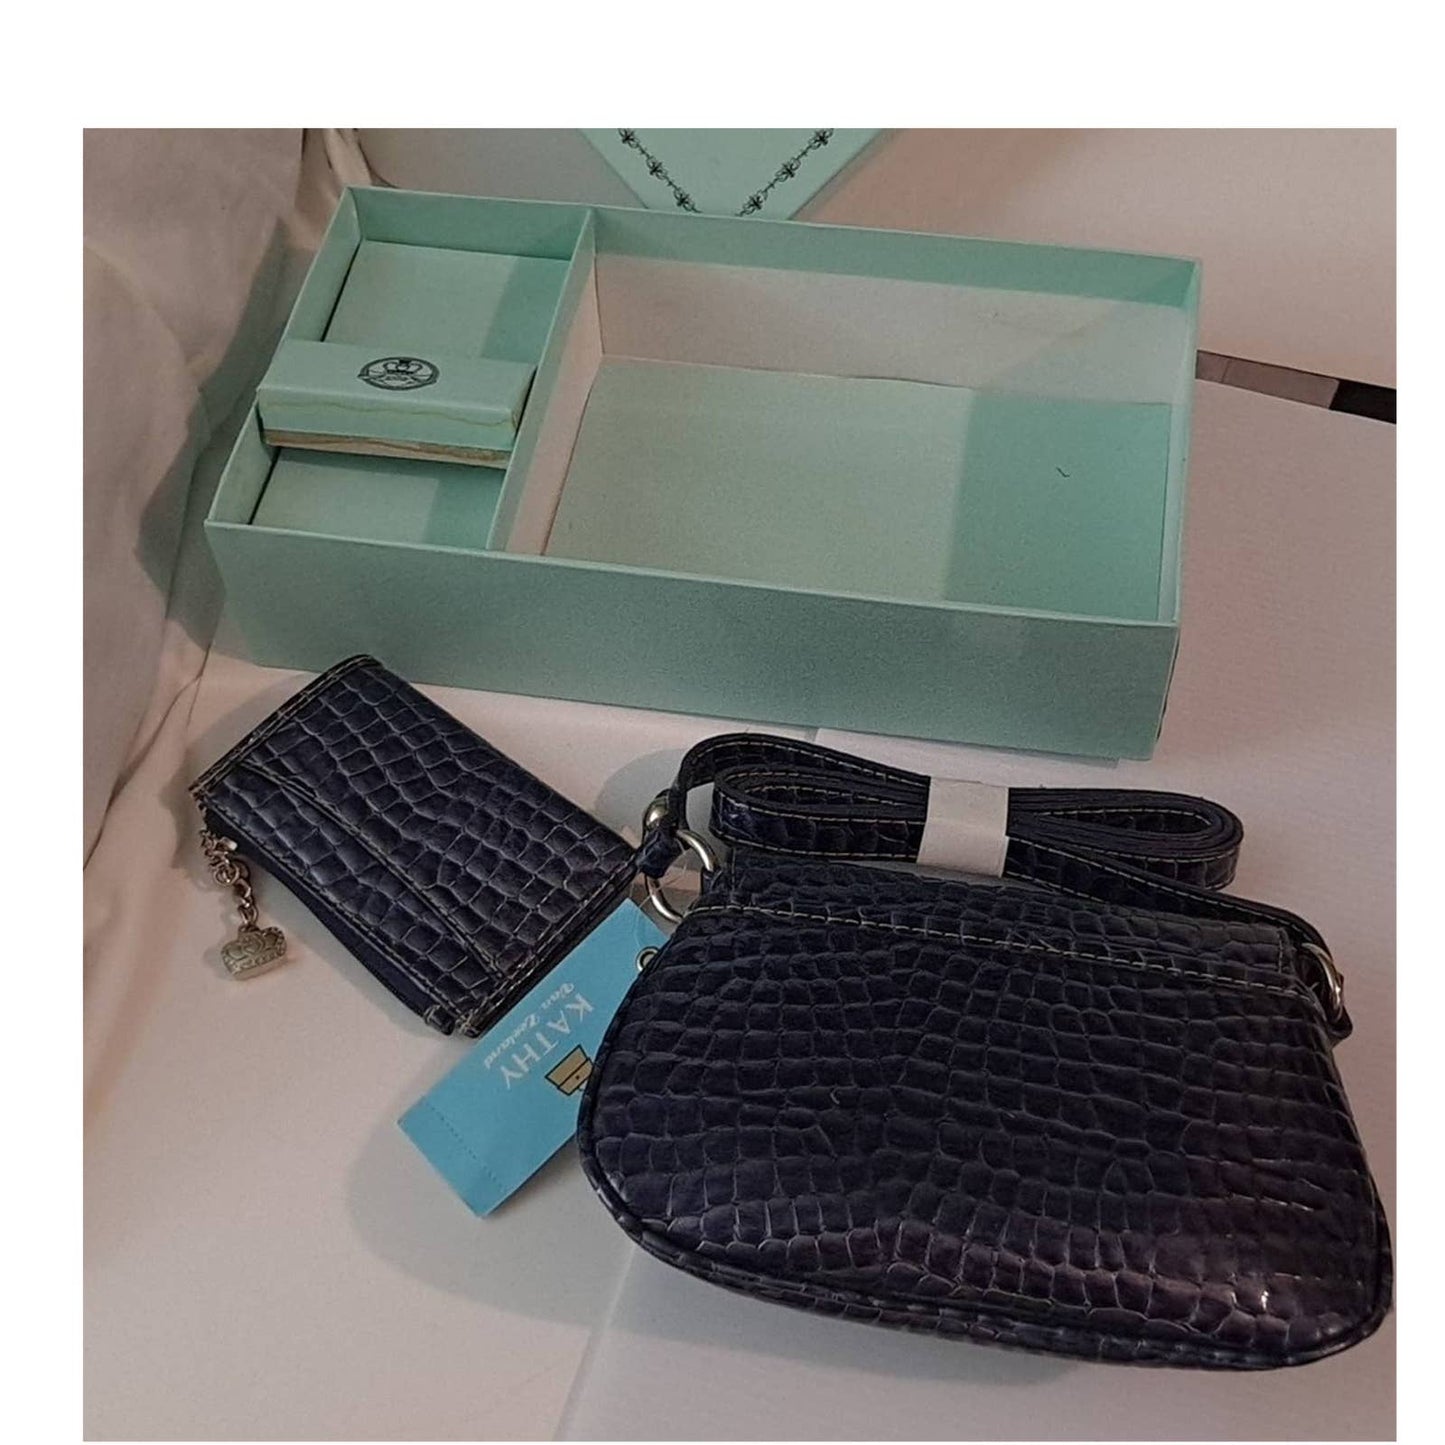 New crossbody Kathy Van Zeeland Blue/Black faux Alligator small party purse